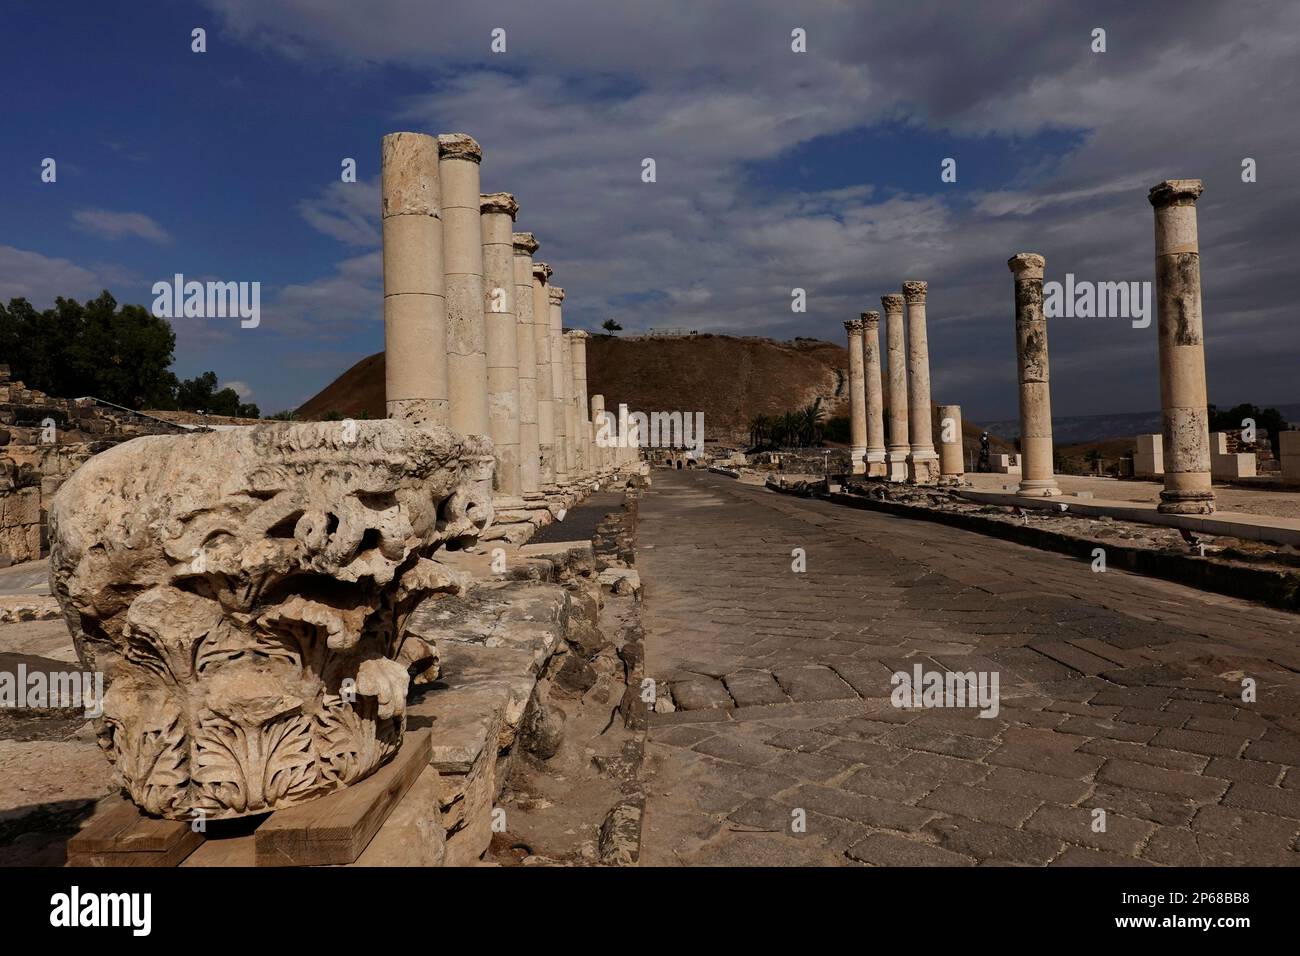 Les ruines de l'ancienne ville romaine et byzantine de Bet She'an, parc national de Bet She'an, Israël, Moyen-Orient Banque D'Images